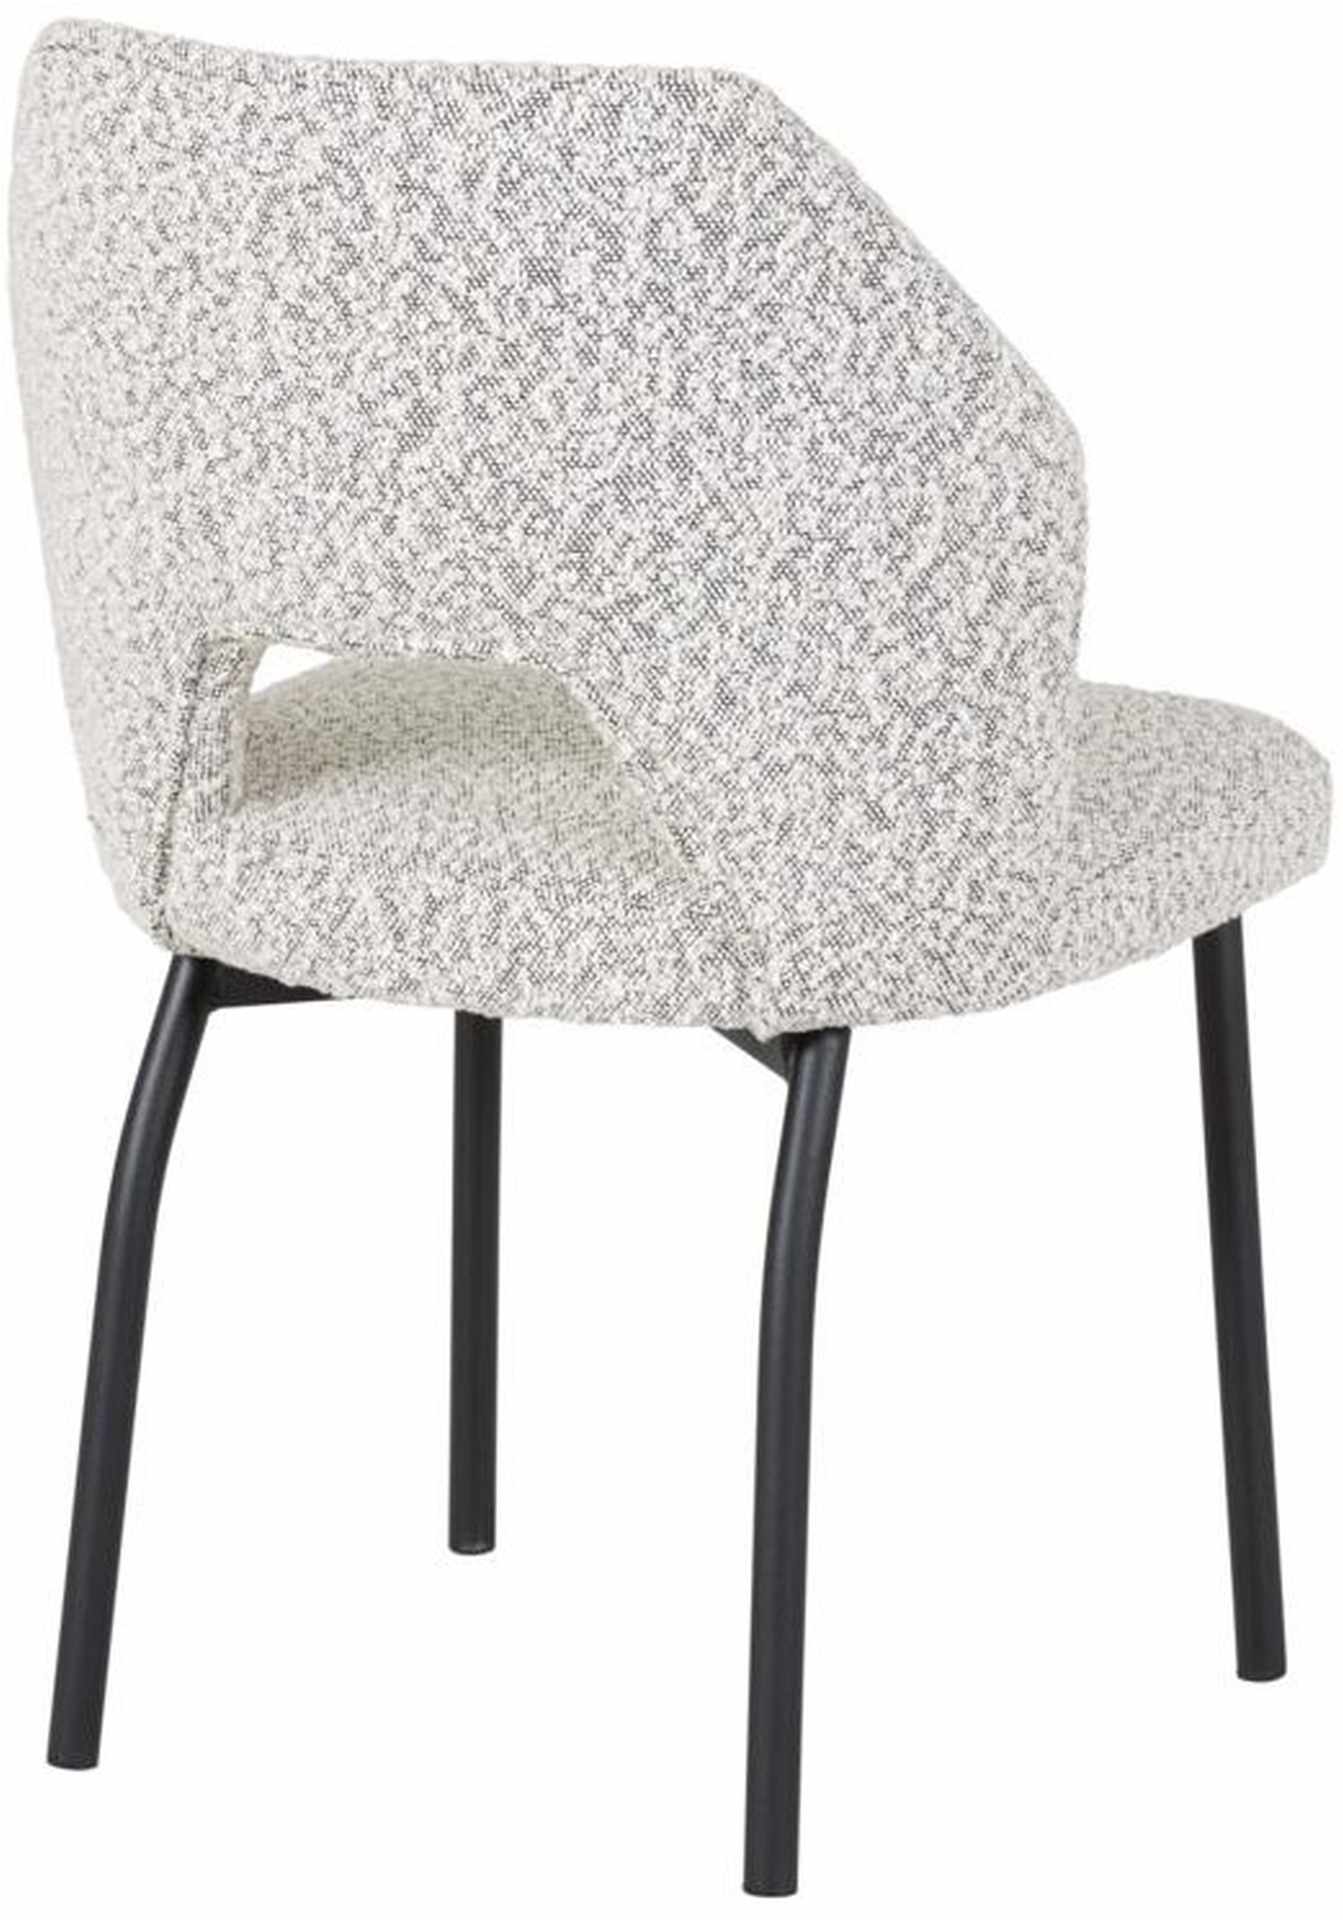 Der Esszimmerstuhl Bloom überzeugt mit seinem modernem aber auch schlichtem Design. Gefertigt wurde der Stuhl aus einem Boucle Stoff, welcher einen hellgrauen Farbton besitzt. Das Gestell ist aus Metall und ist Schwarz.